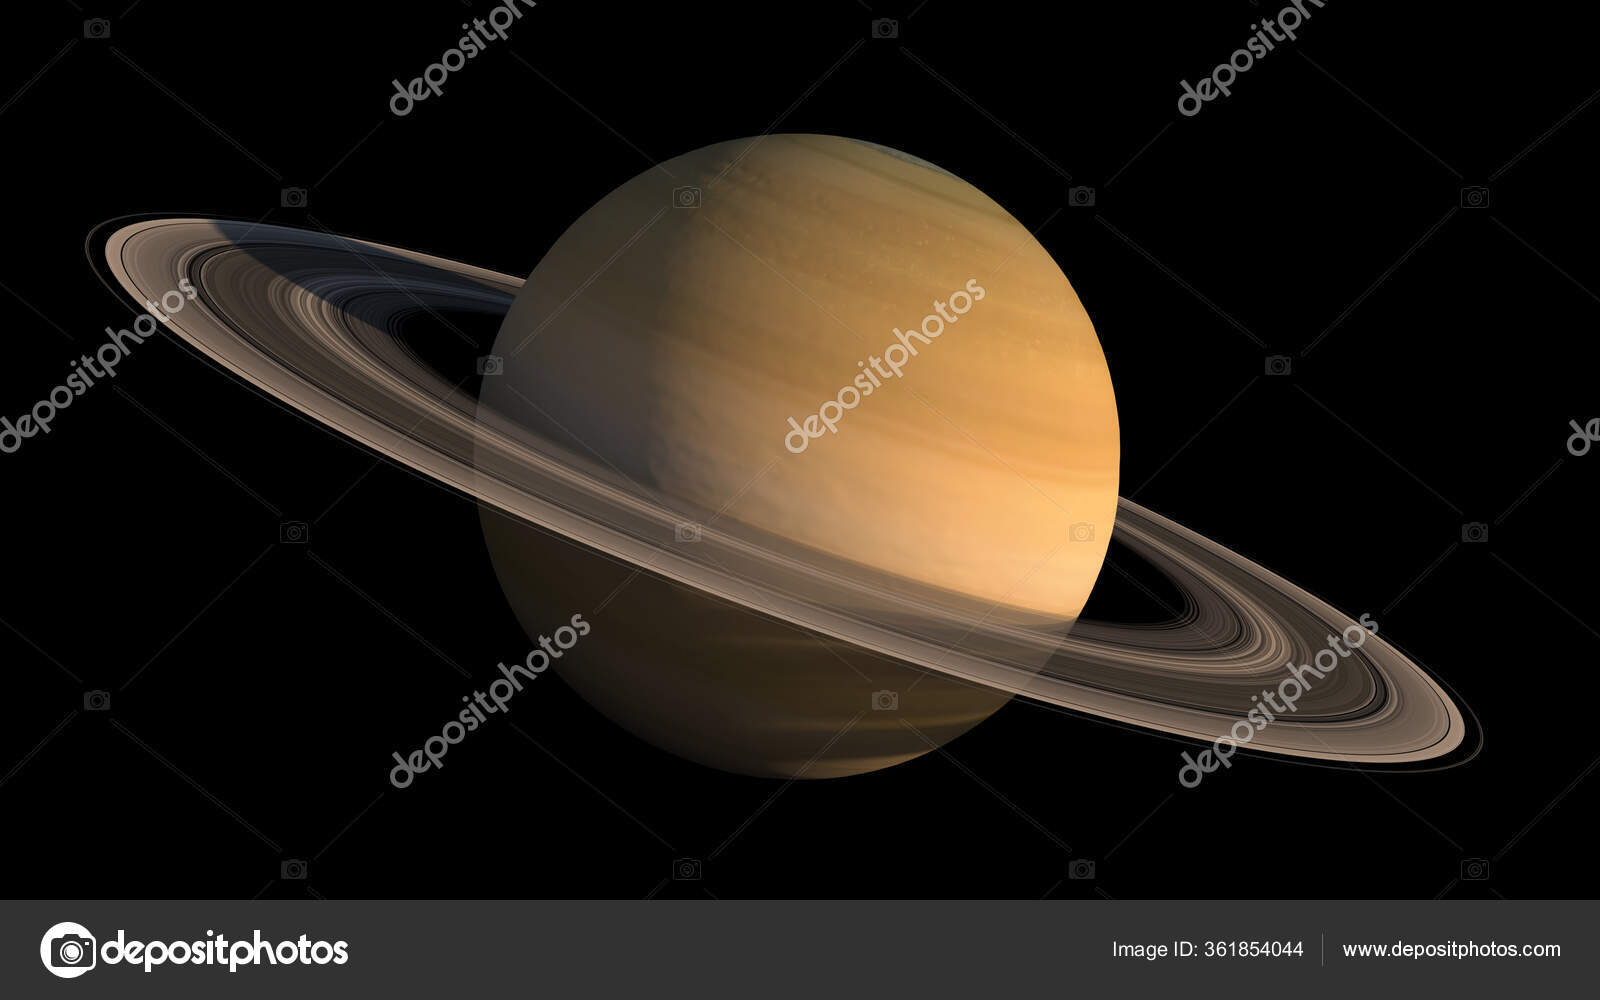 Jupiter's Rings - Mission Juno